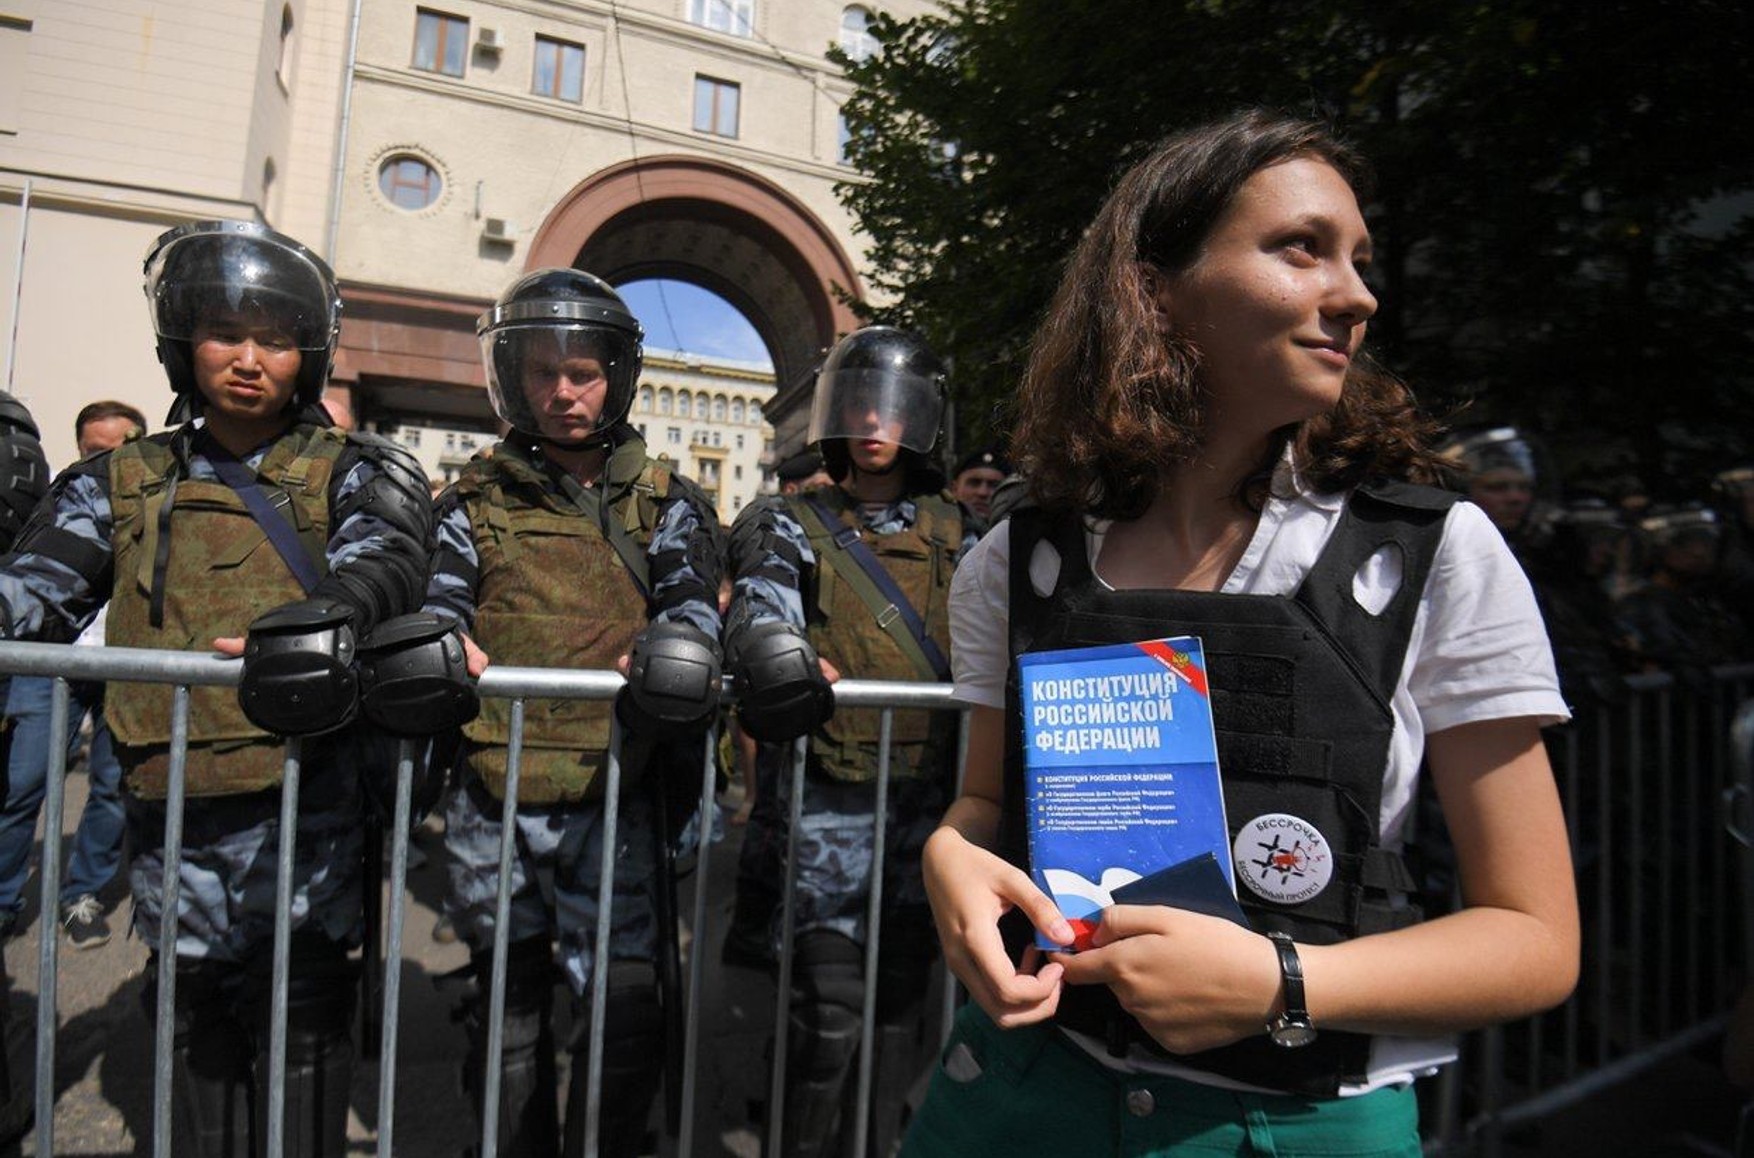 МВД объявило в федеральный розыск Ольгу Мисик, «девочку с Конституцией» с летних протестов 2019 года